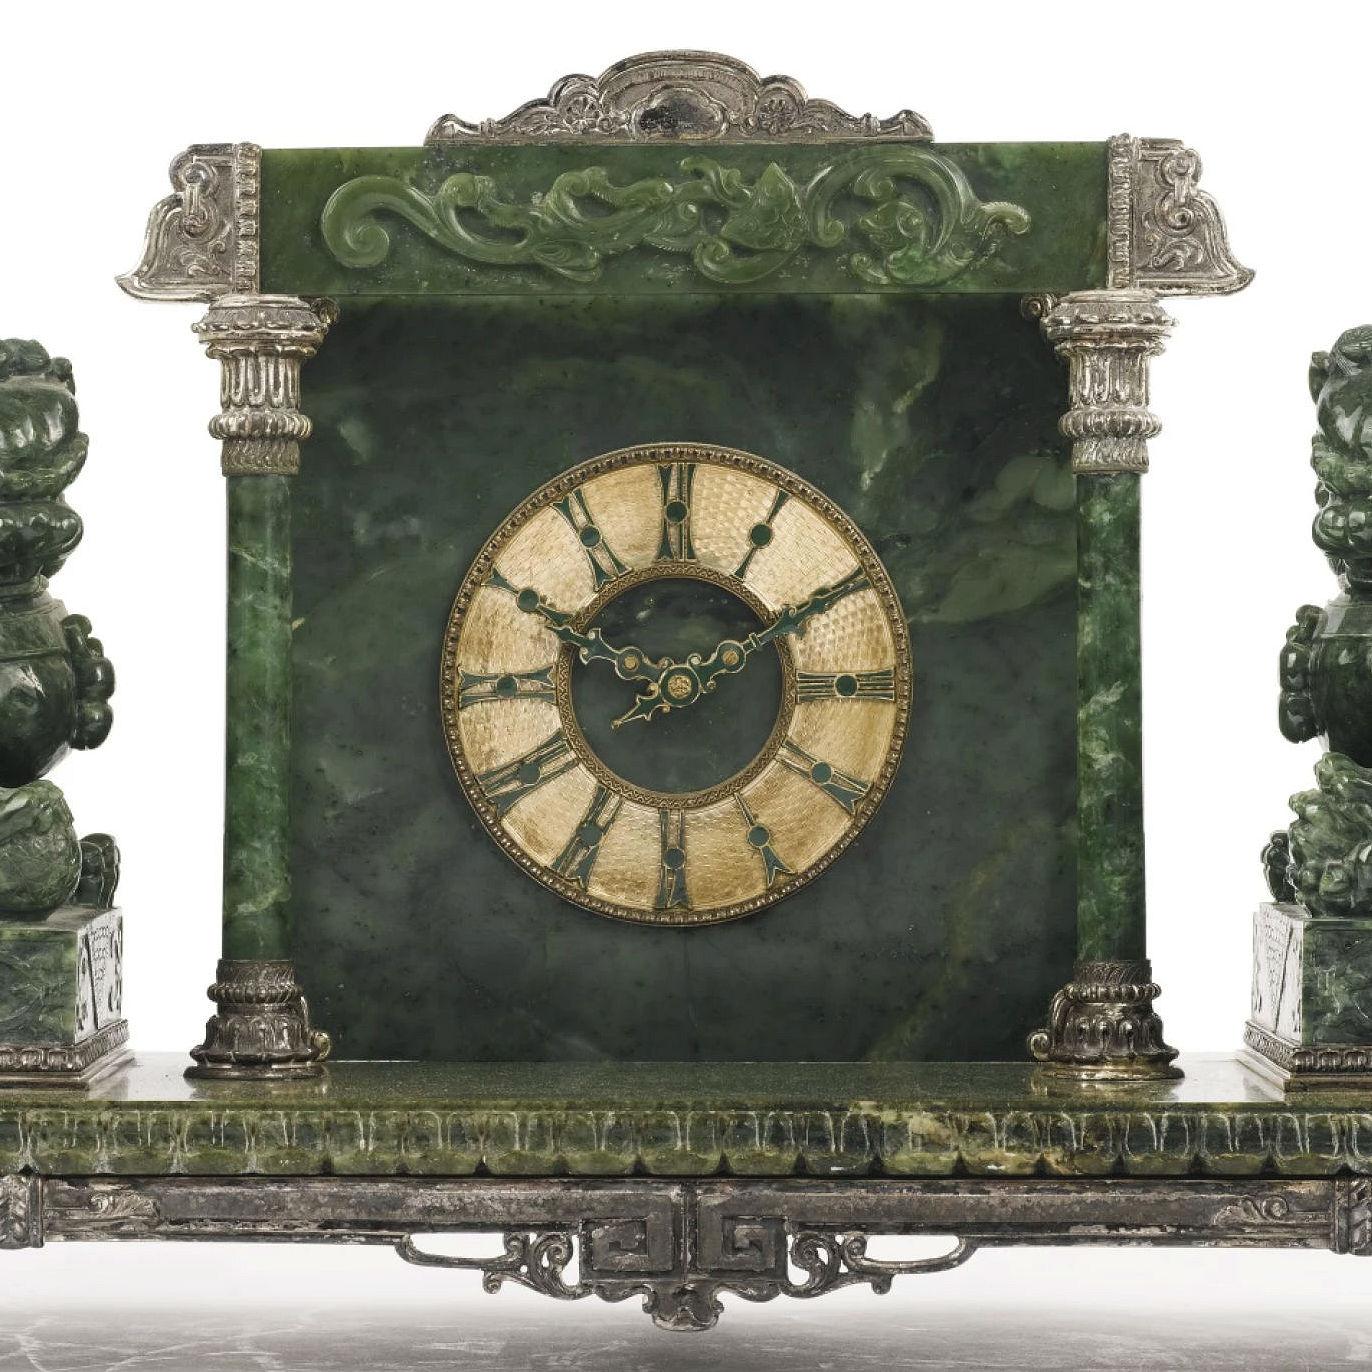 Notre belle horloge de cheminée de style portique, vendue par Yamanaka & Company Ltd. à New York au début du 20e siècle, présente un cadre en métal argenté flanqué de deux lions en bois finement sculptés et un mouvement de la Chelsea Clock Company.